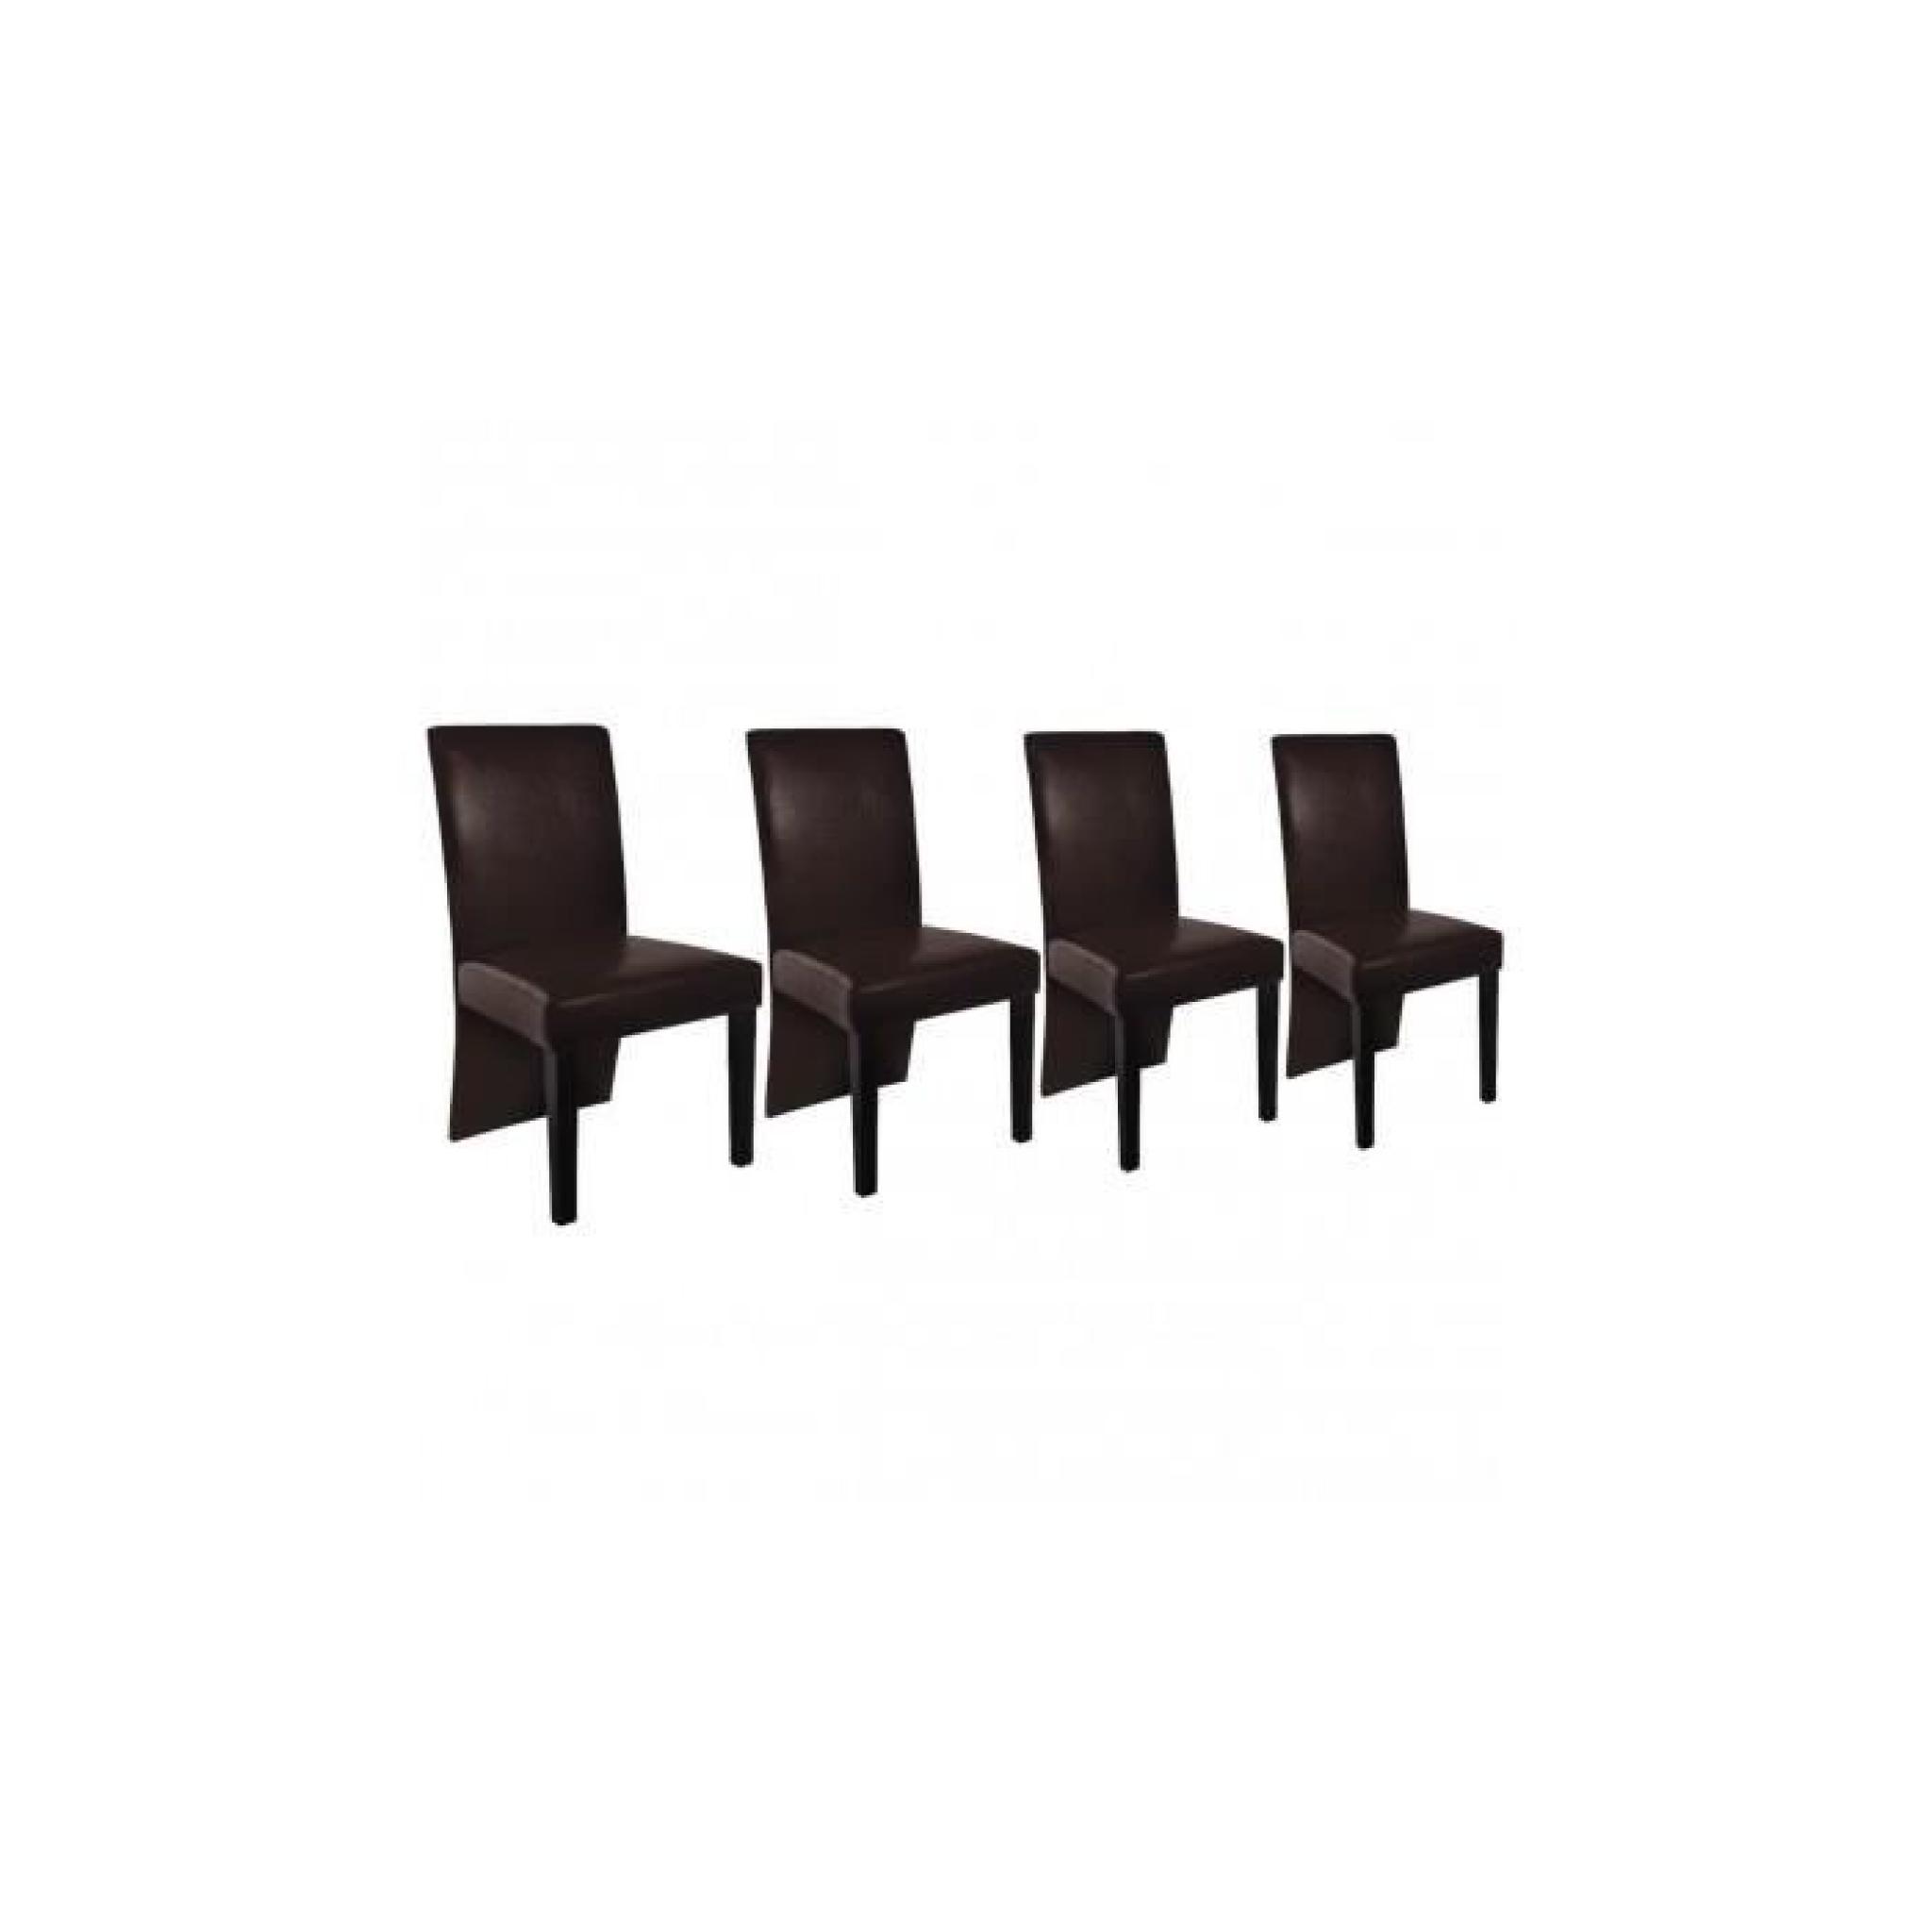 Chaise design bois marron (lot de 4) 53 x 43 x 93 pas cher